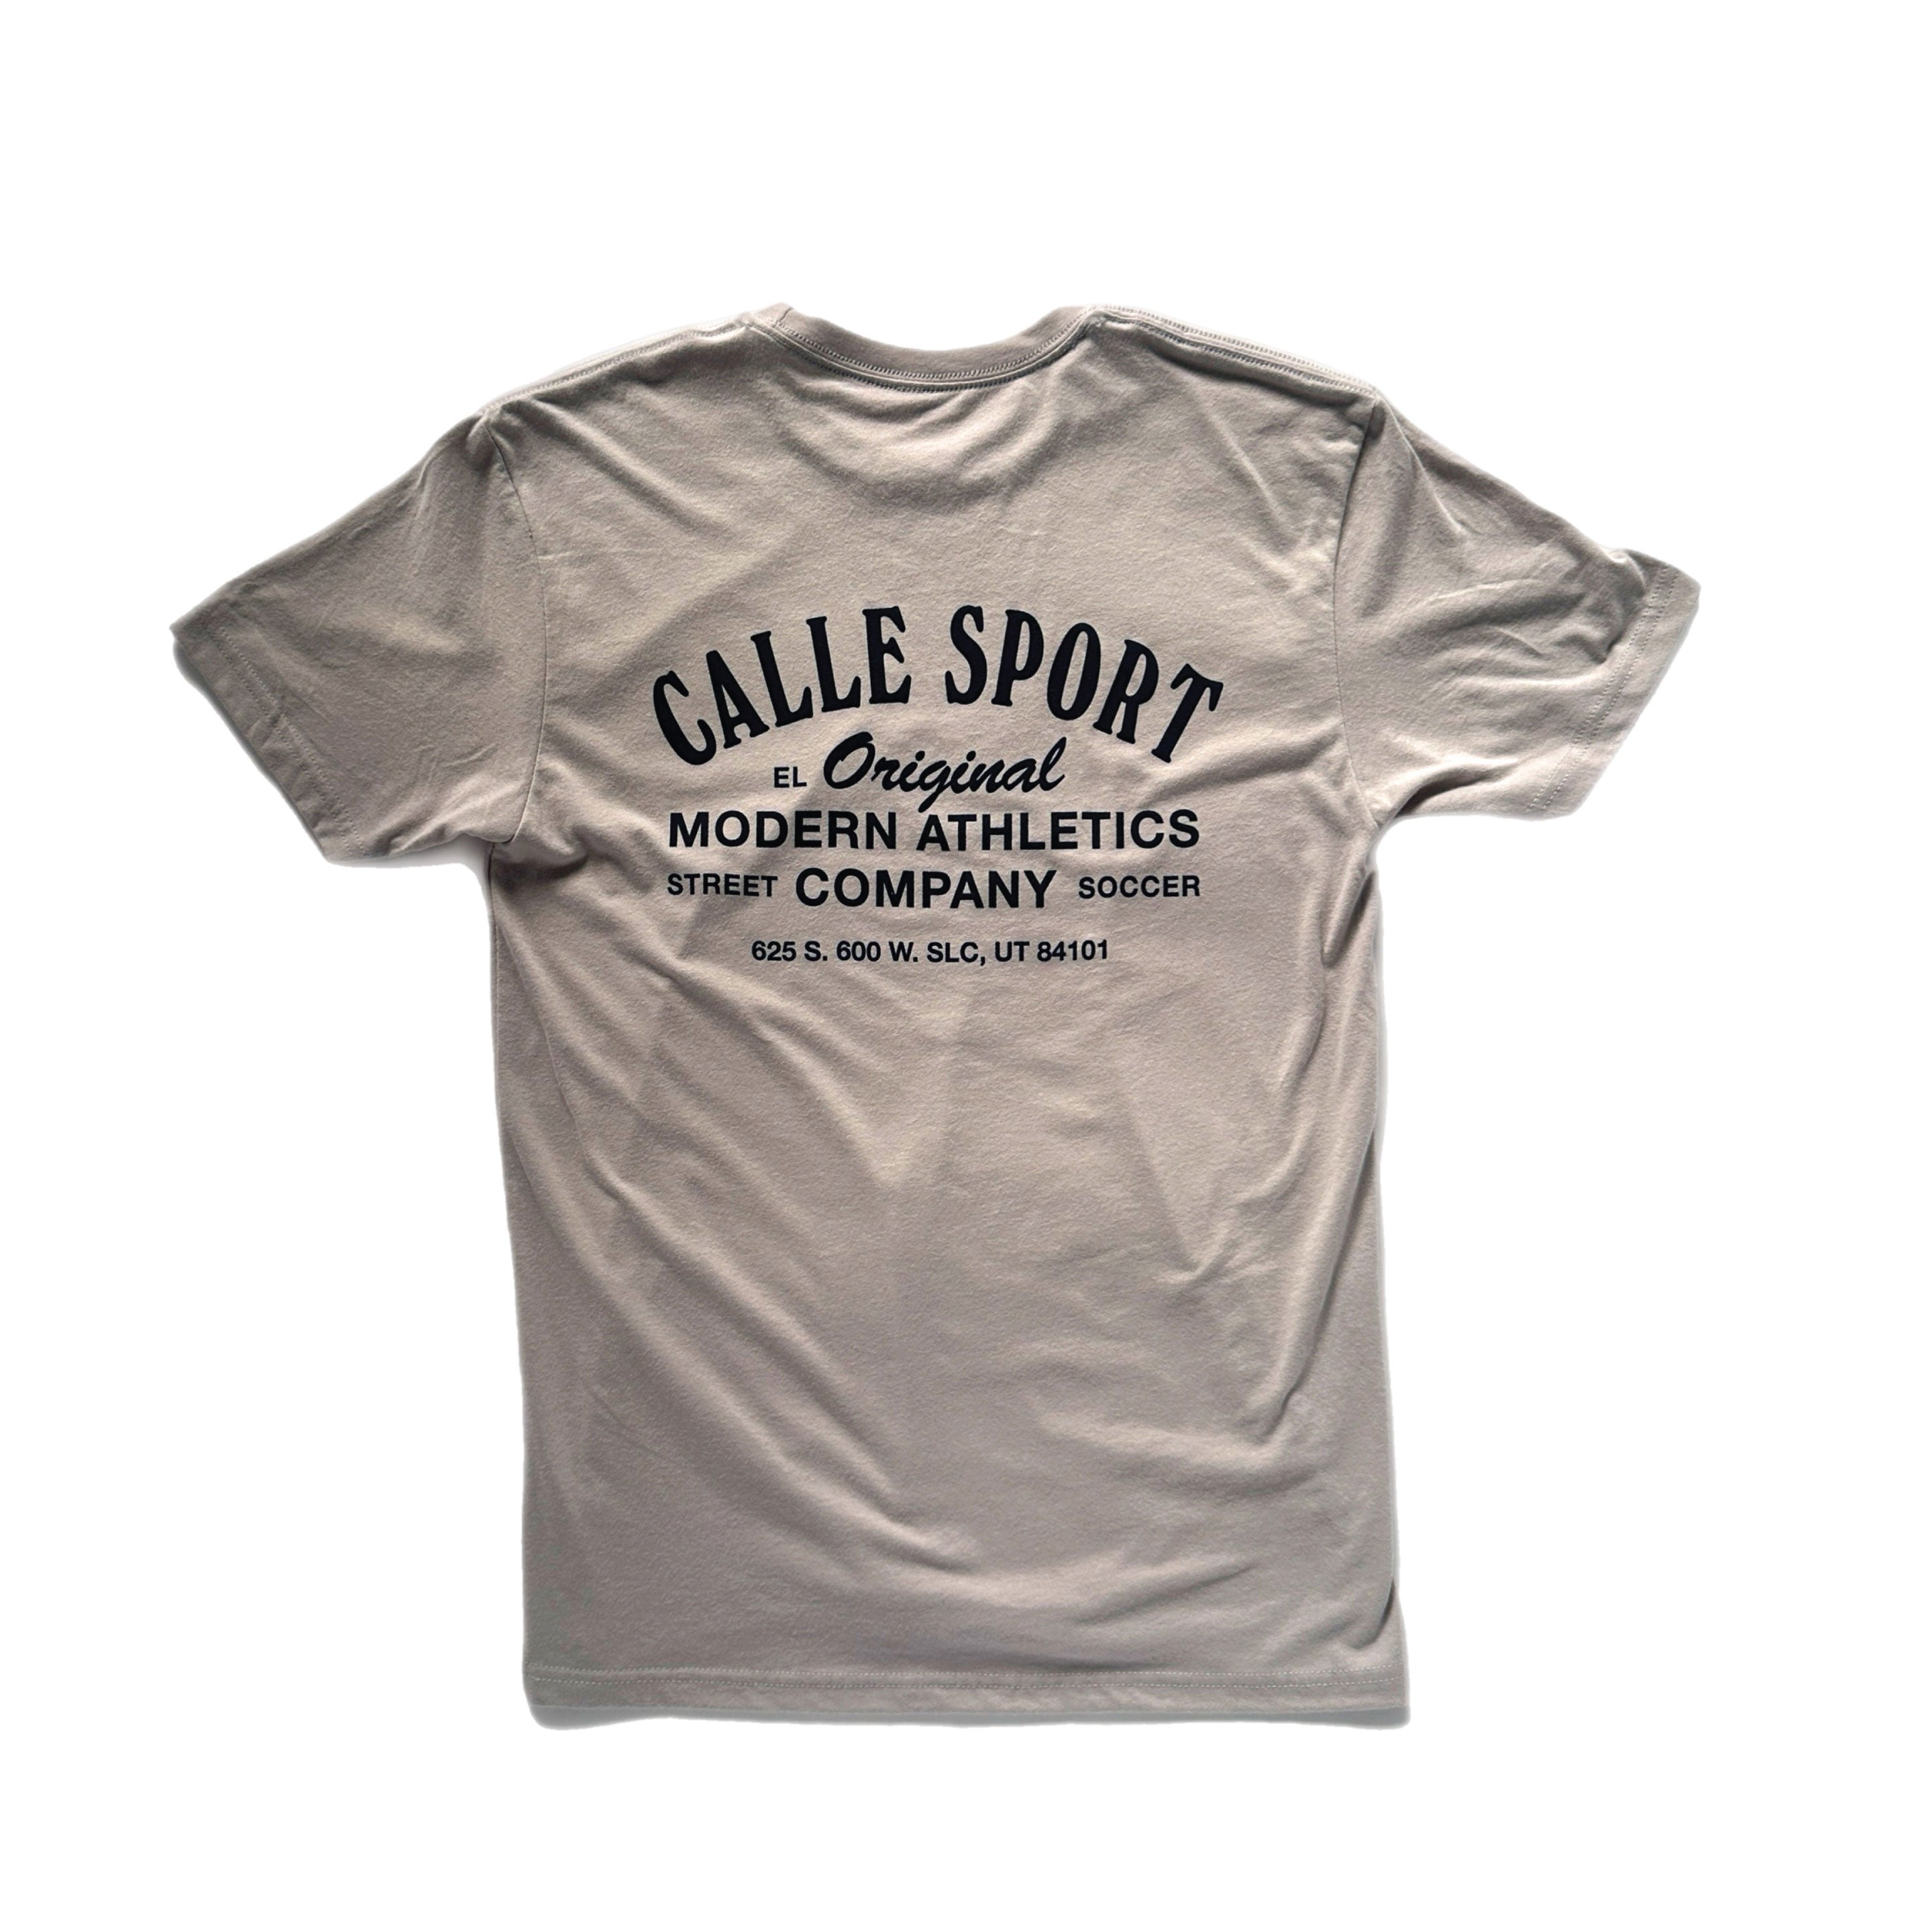 'El Original' Calle Sport T-Shirt